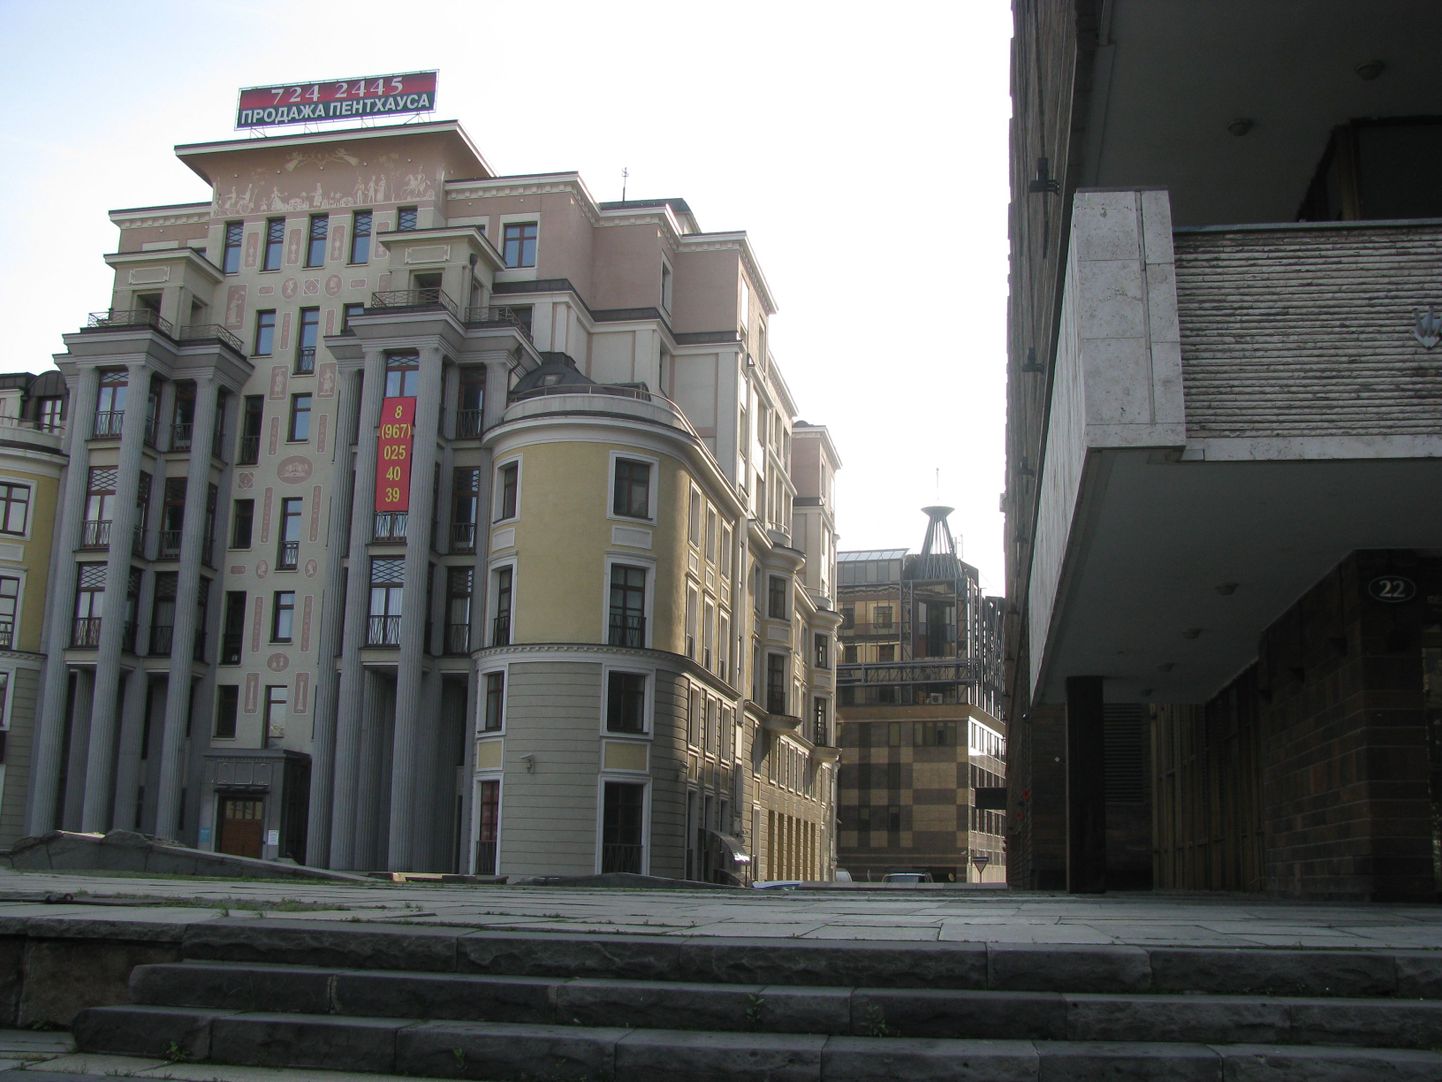 Тверской бульвар: слева – МХАТ, справа – дом, элитные пентхаузы, которые продаются.